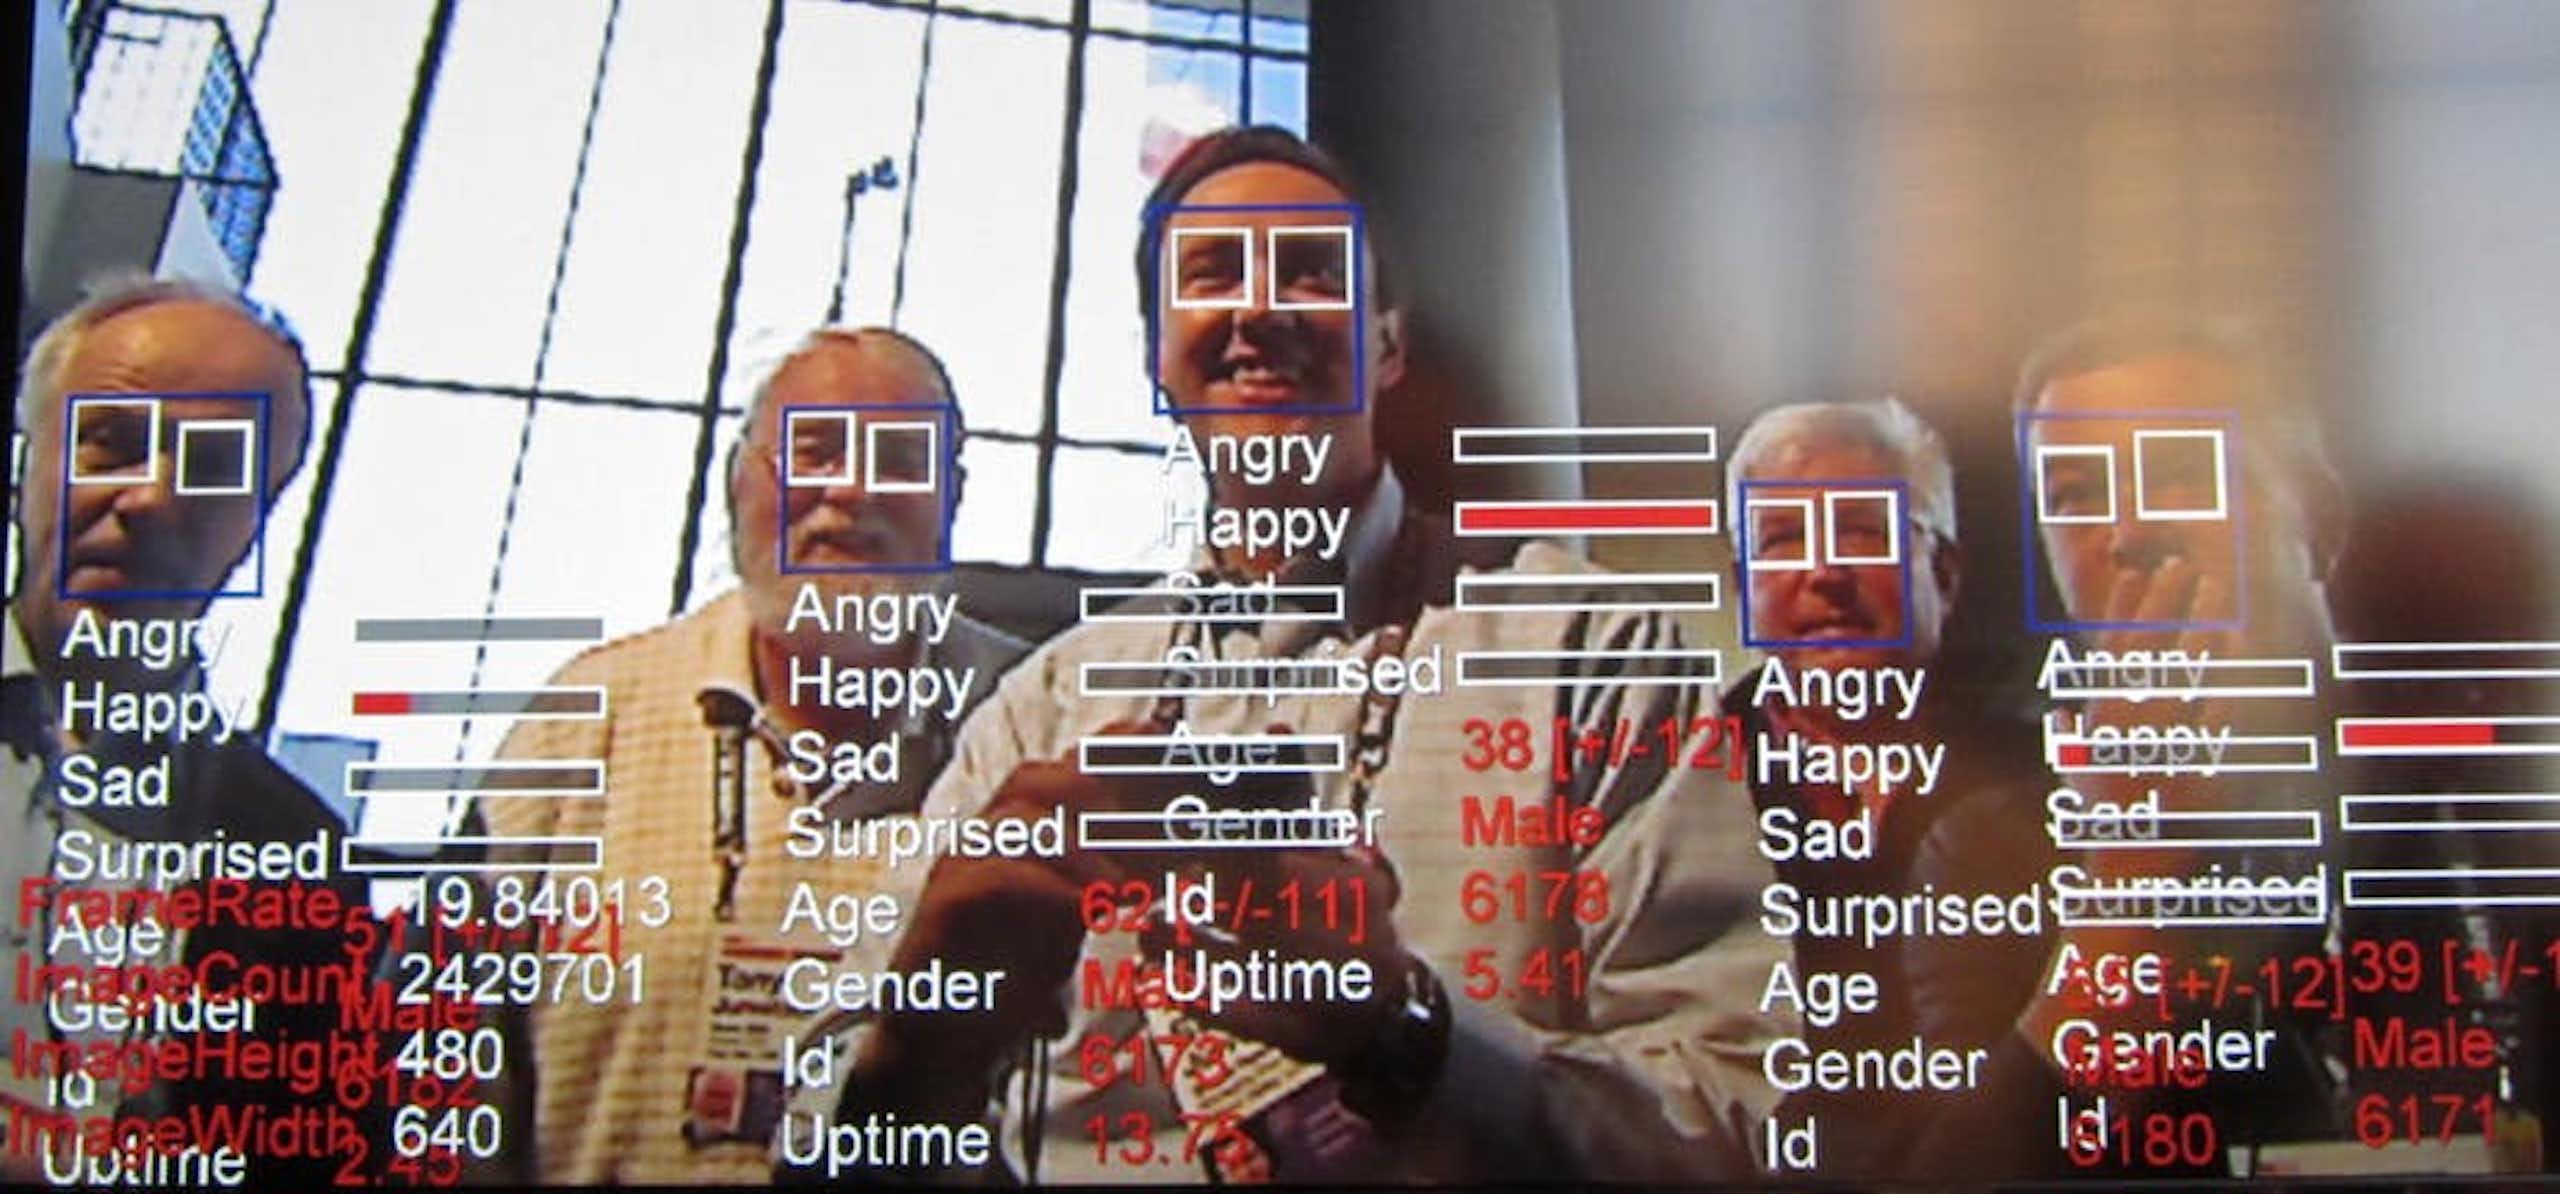 Kini kecerdasan buatan AI dapat membaca emosi manusia, mengapa kita perlu waspada?